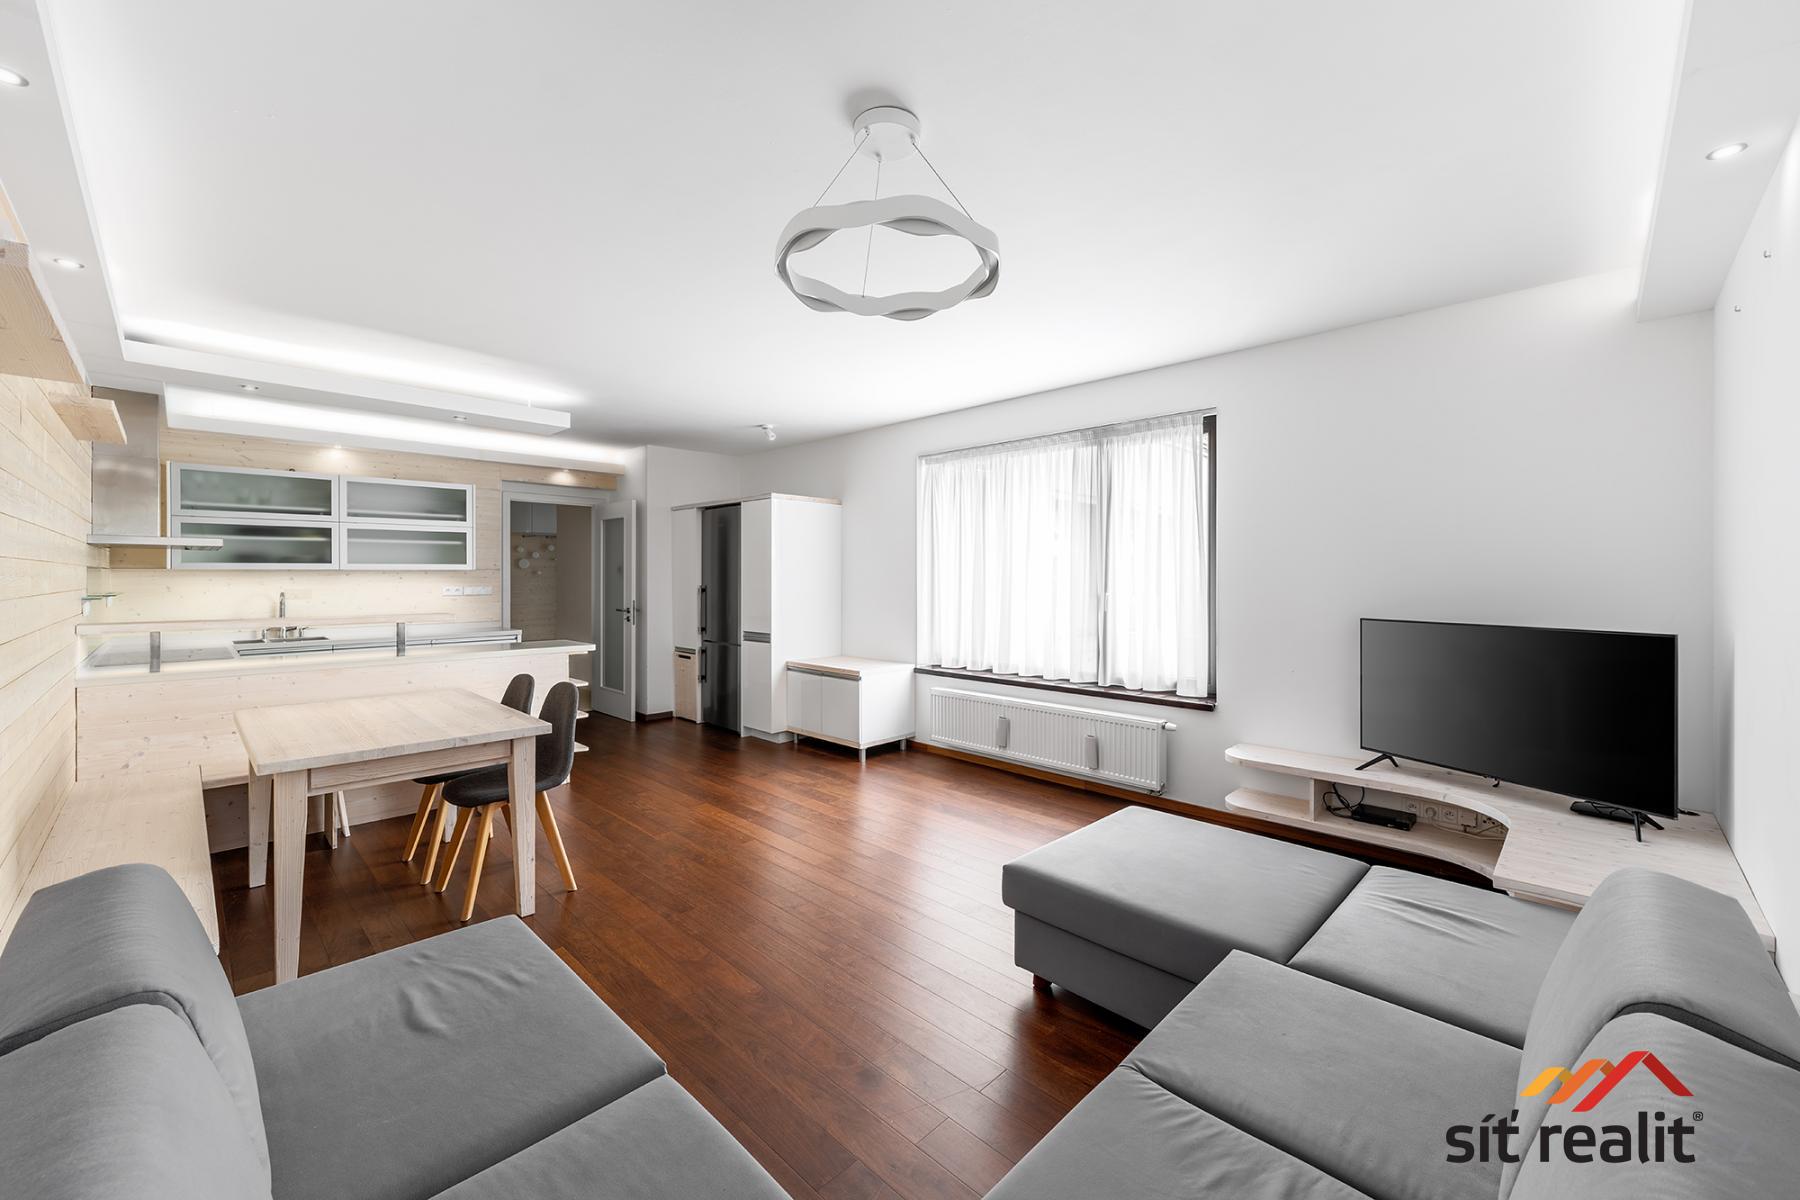 Luxusní apartmán ve Špindlerůvě Mlýně, 3+kk, 93 m2, Rezidence Luční dům, garáž, sklepní komora